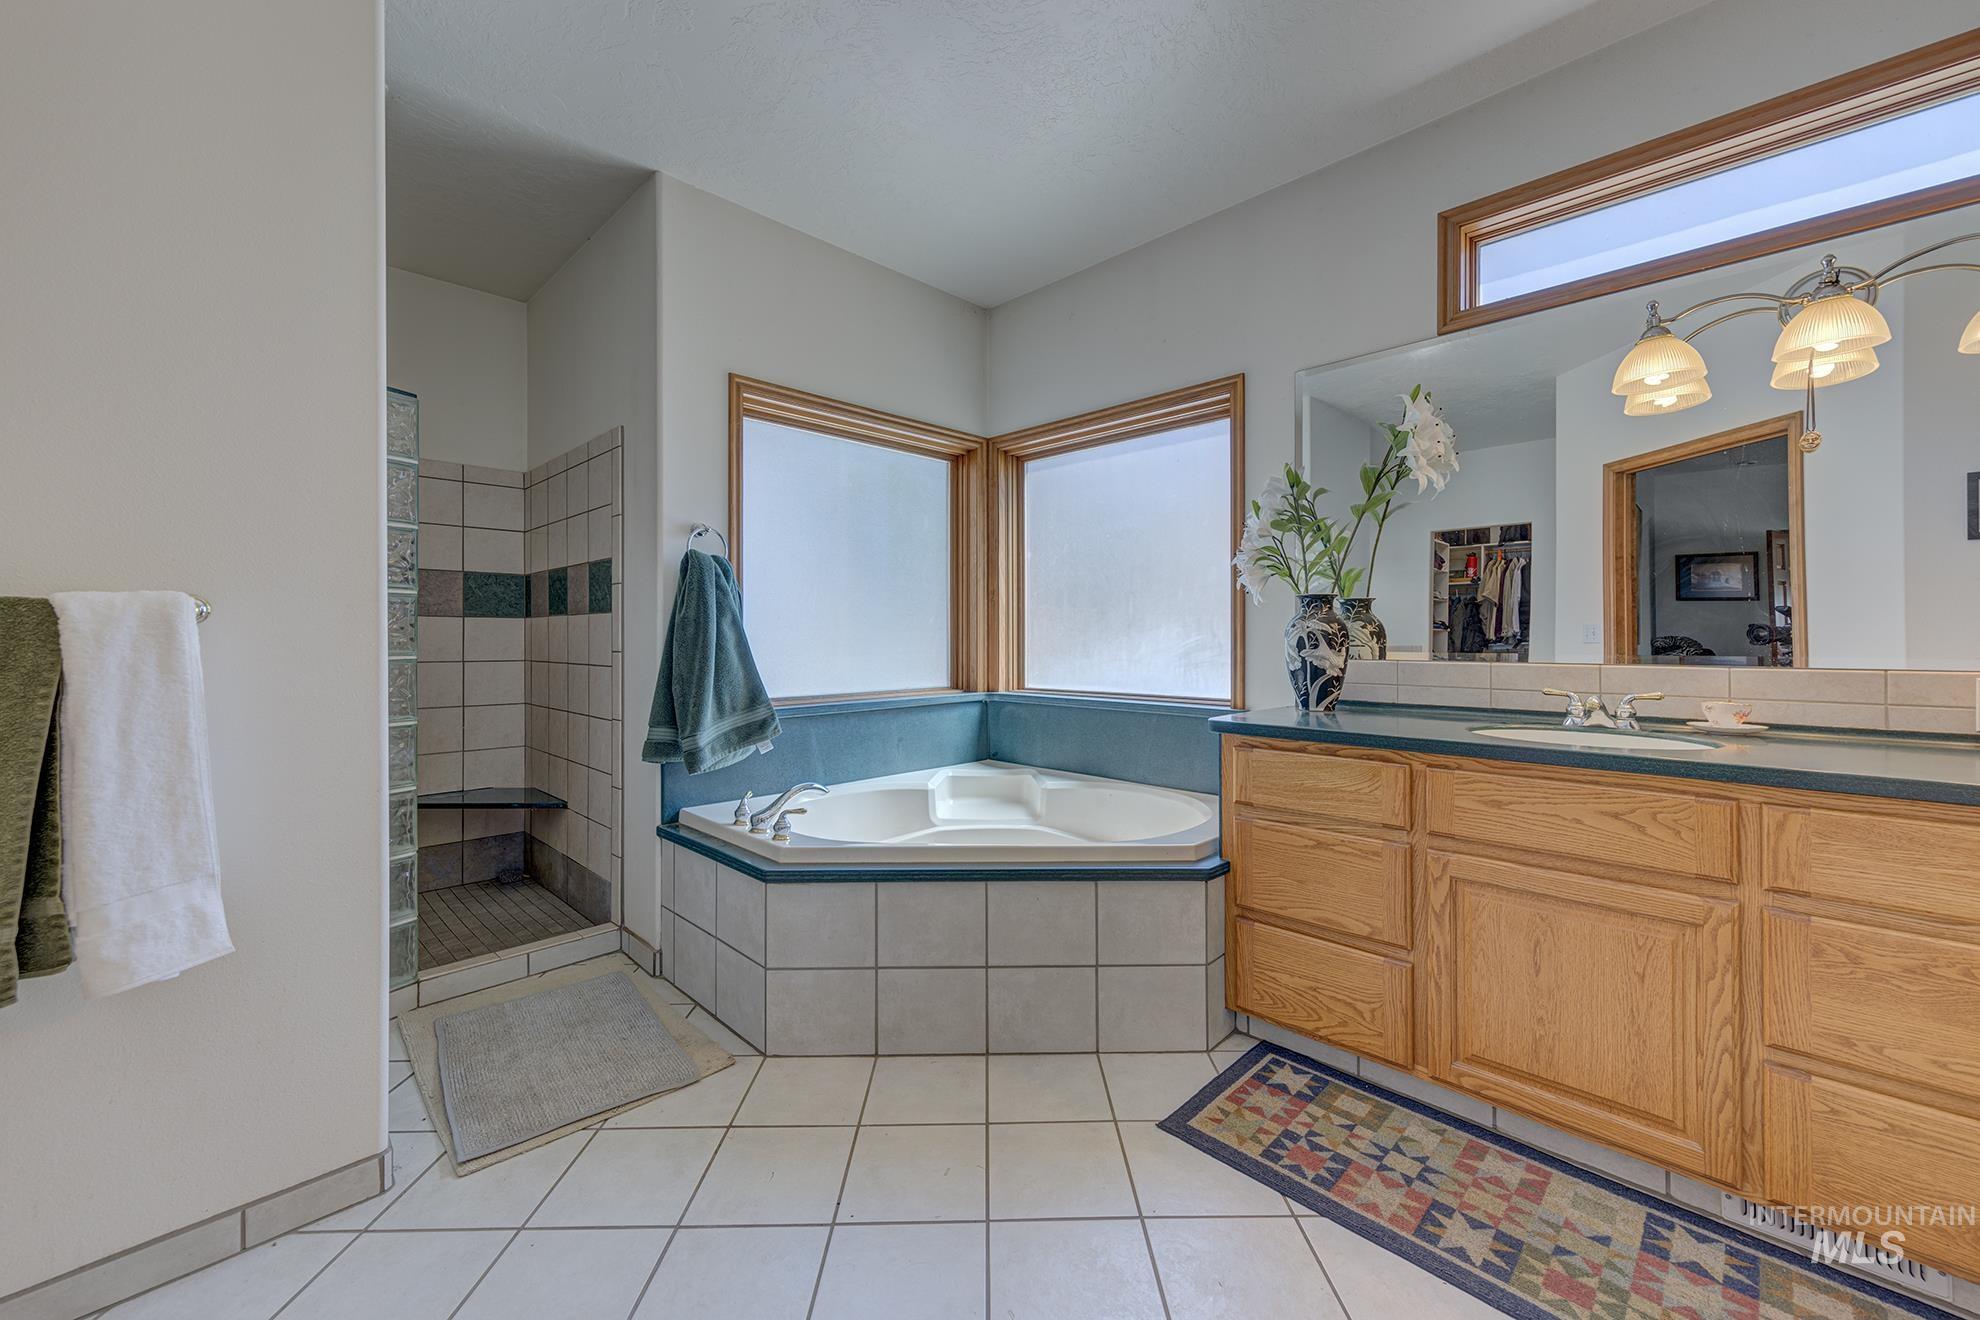 268 Grove rd, Ontario, Oregon 97914, 5 Bedrooms, 3.5 Bathrooms, Farm & Ranch For Sale, Price $1,150,000,MLS 98902017